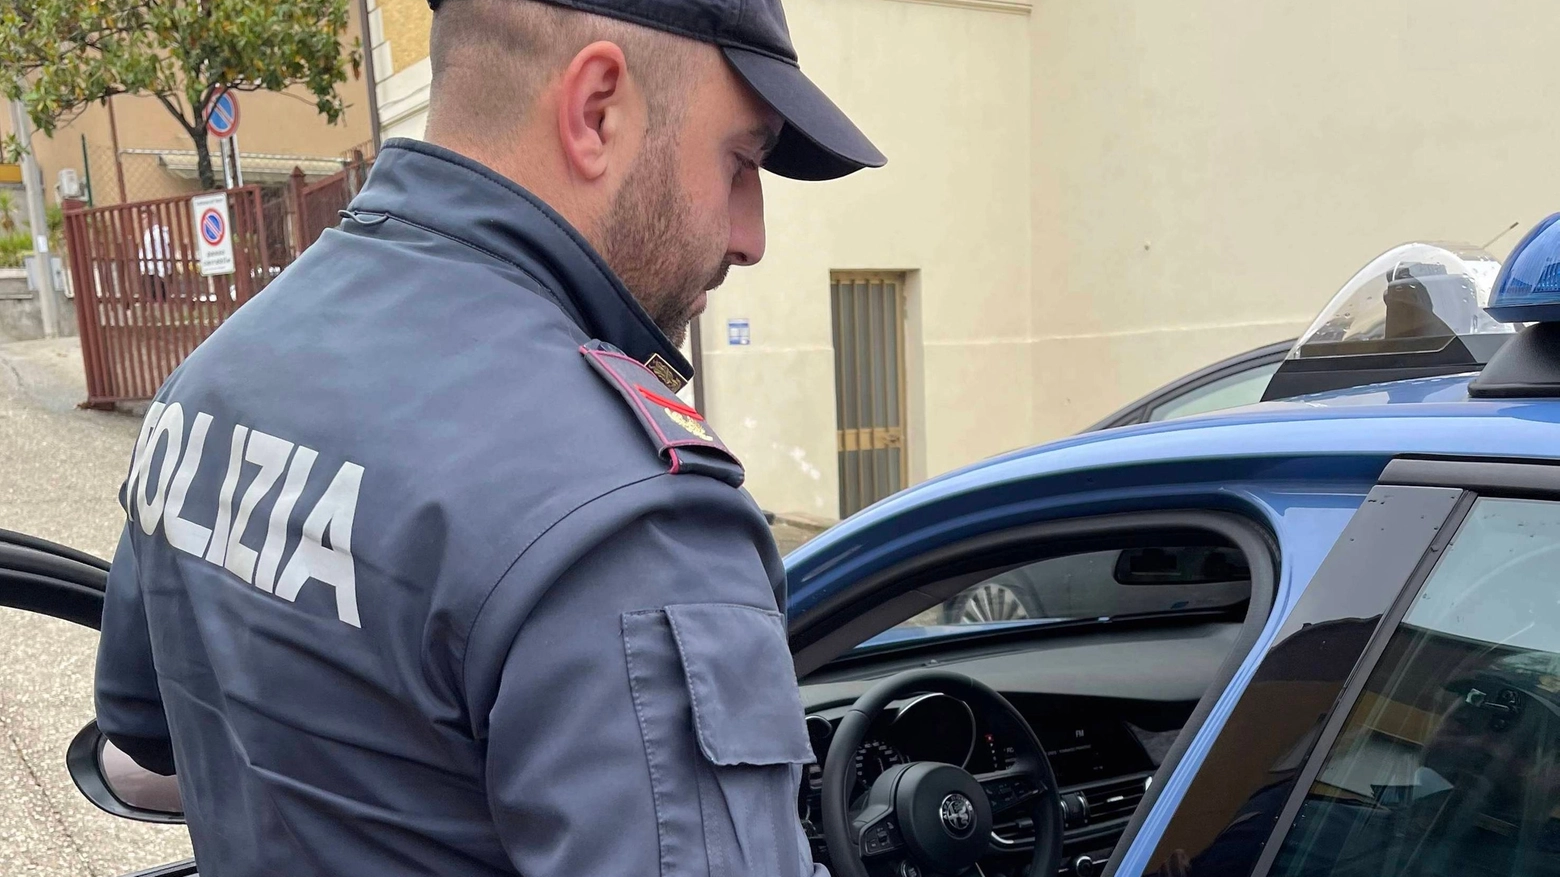 E’ accaduto in un negozio nel centro di Perugia. La polizia ha arrestato il 54enne con l’accusa di tentata rapina impropria